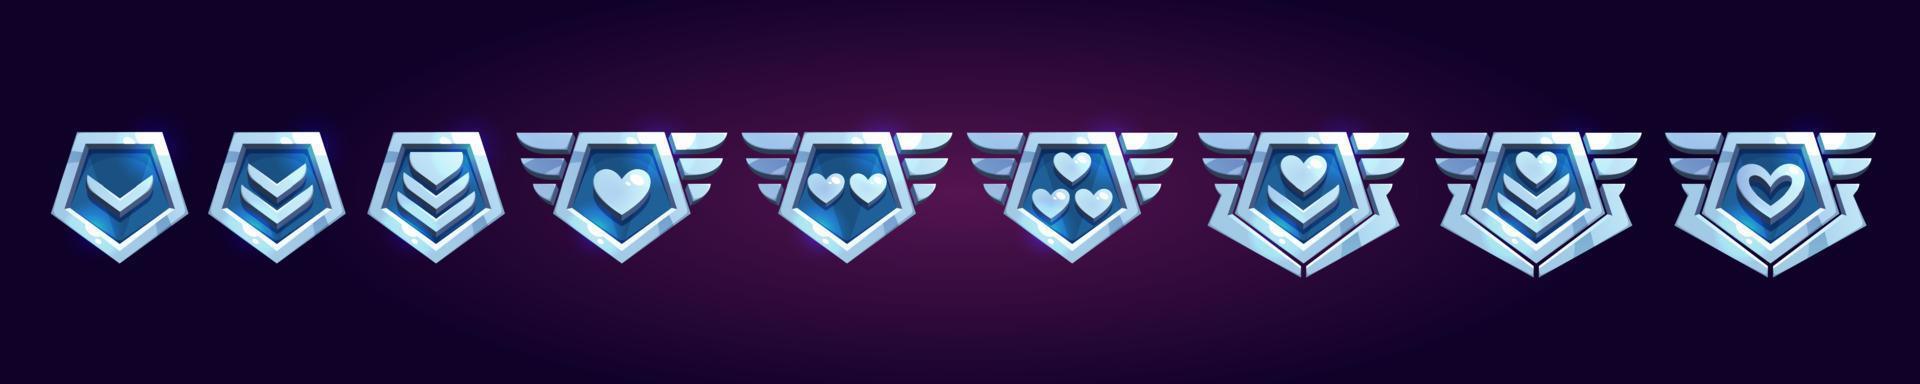 conjunto de juego rango insignias con corazones vector